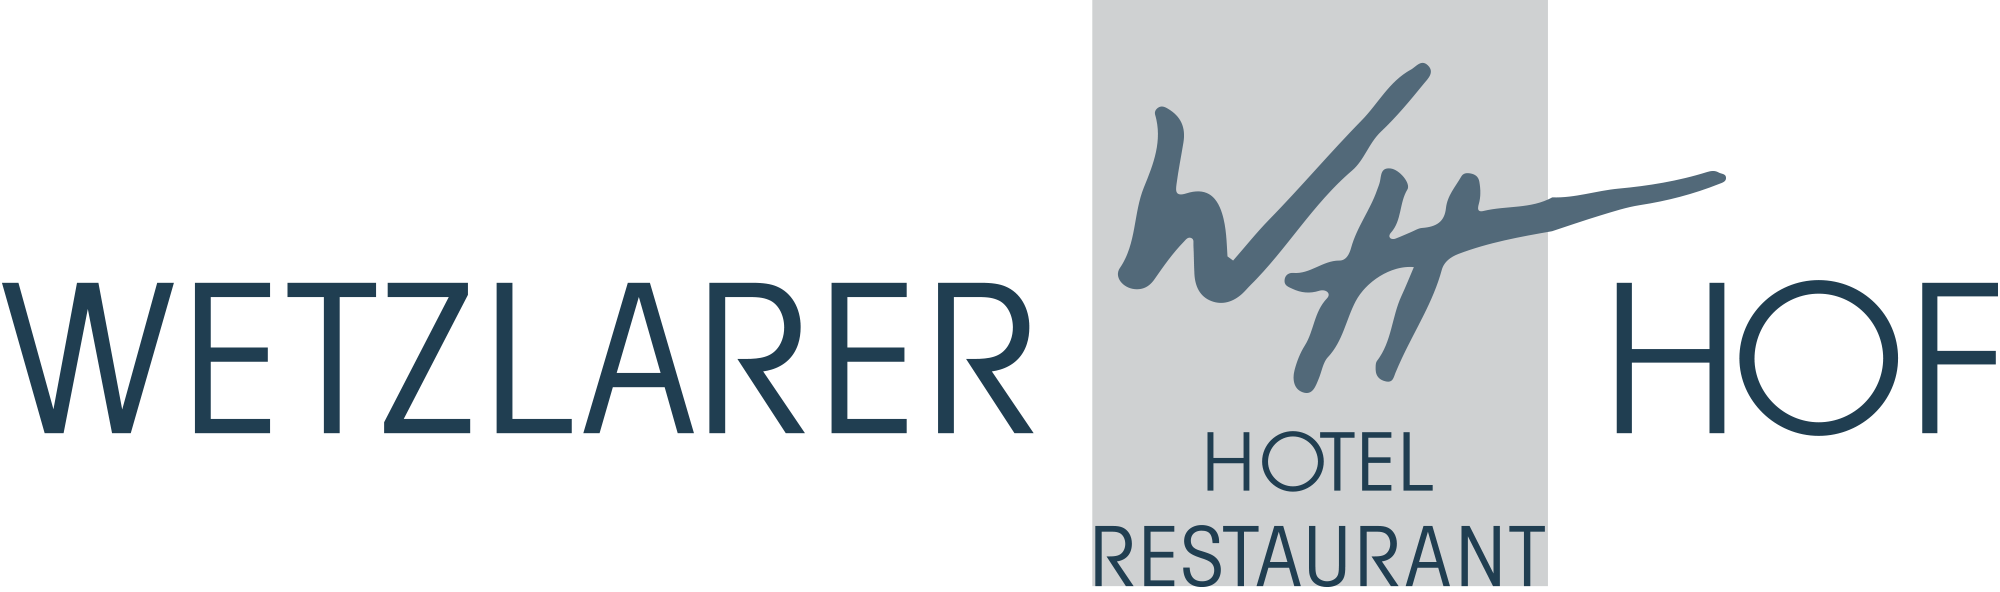 Hotel-Wetzlarer-Hof-Logo